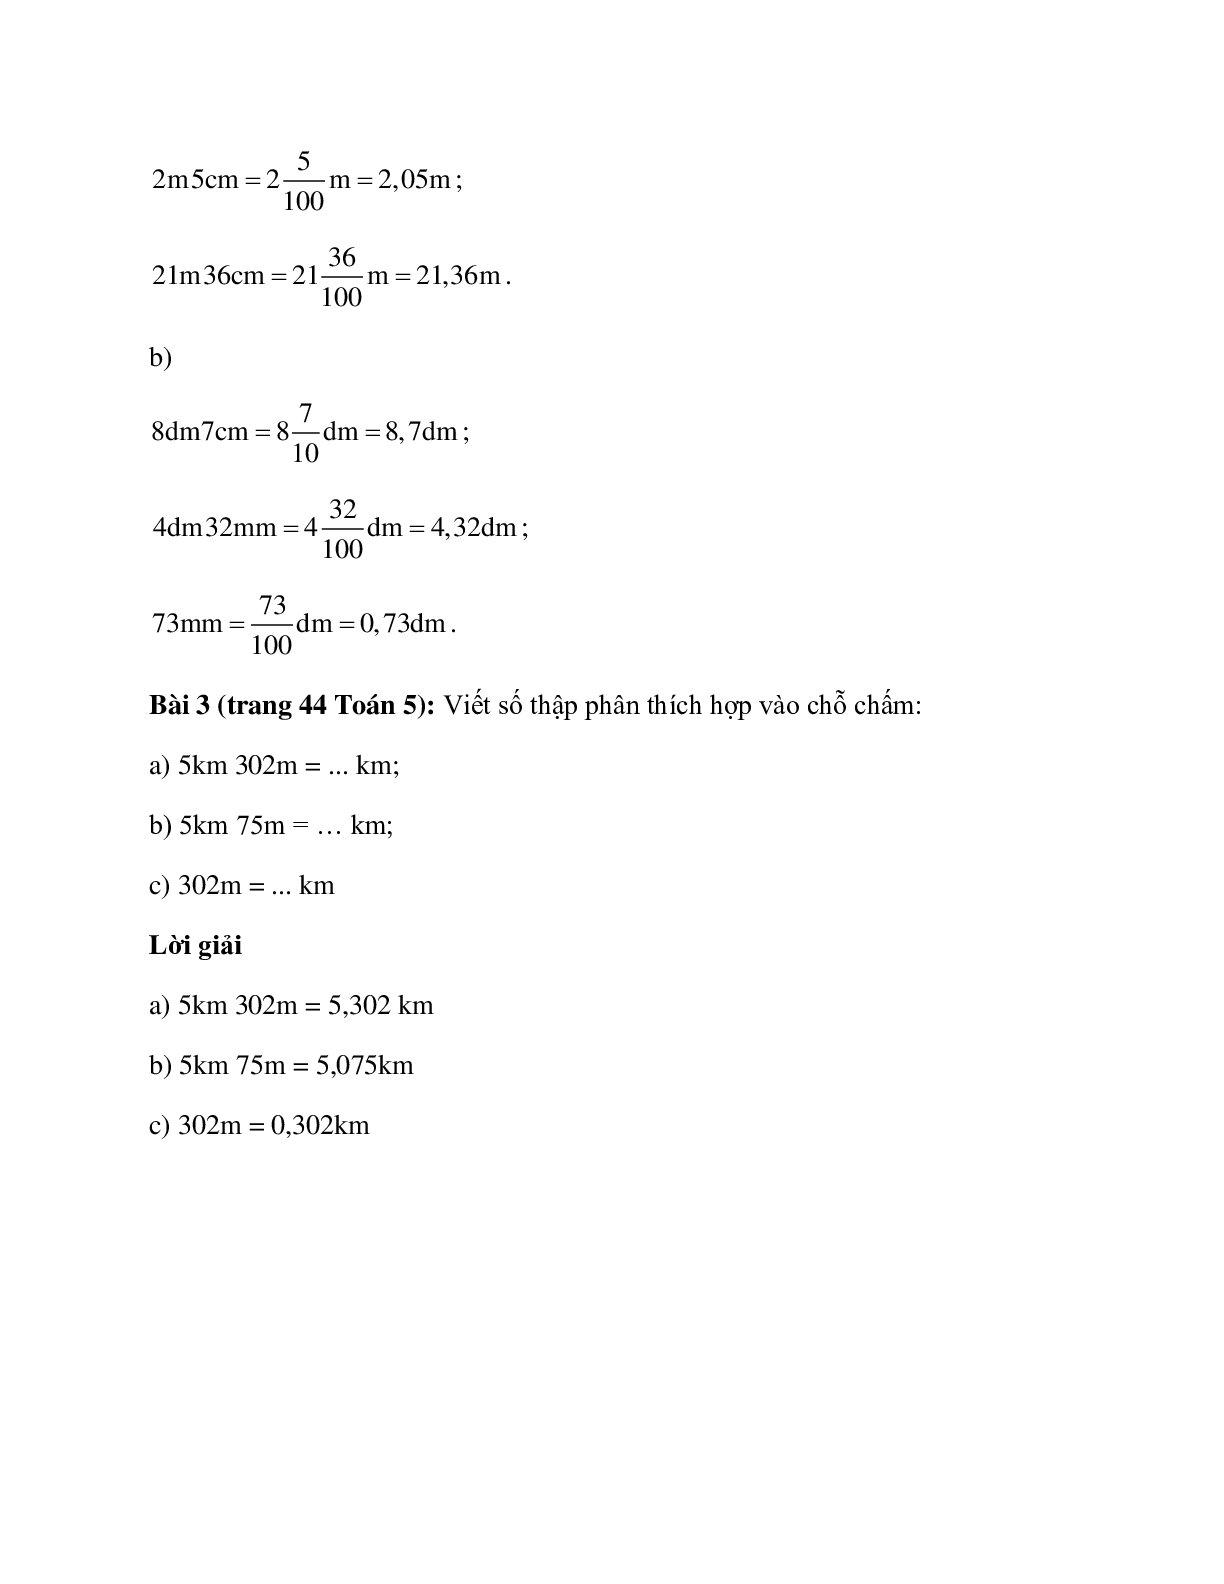 Toán lớp 5 trang 44 Viết các số đo độ dài dưới dạng số thập phân (trang 2)